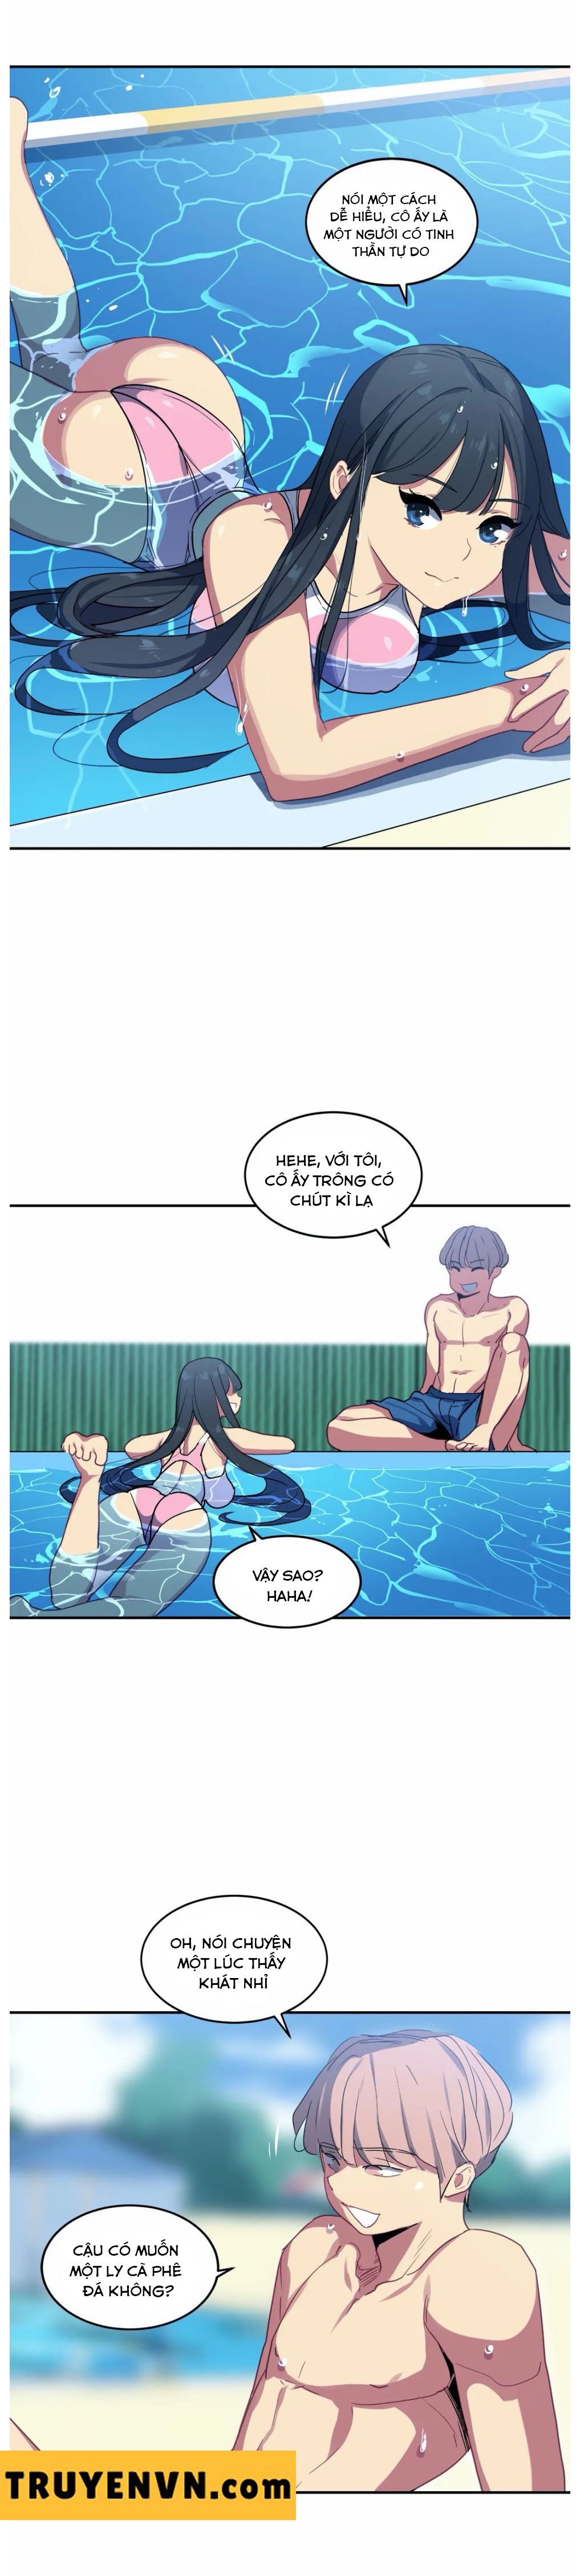 Chị Gái Sexy Ở Hồ Bơi Chapter 23 - Trang 7